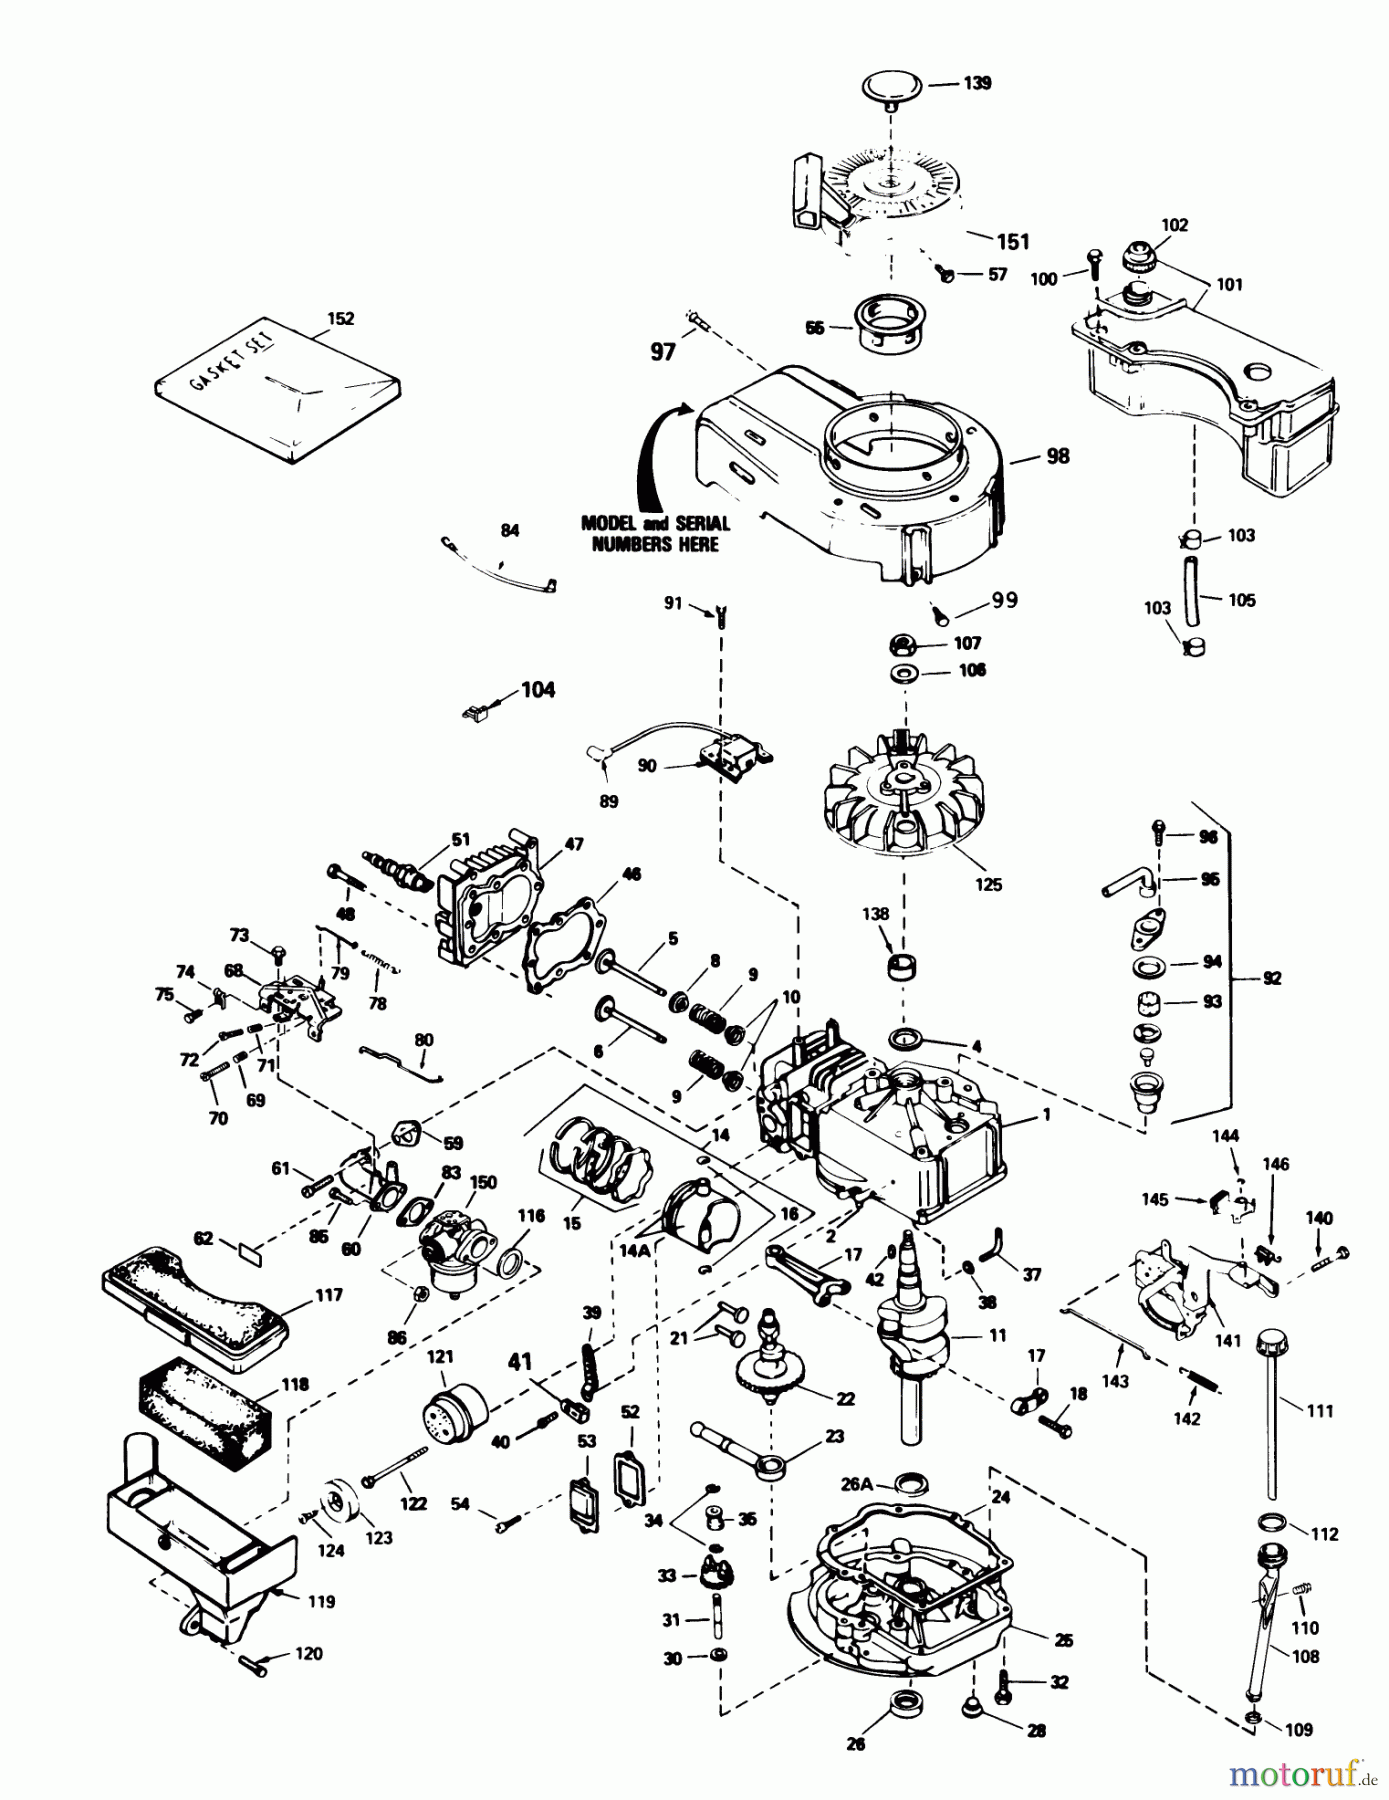  Toro Neu Mowers, Walk-Behind Seite 1 20586 - Toro Lawnmower, 1988 (8000001-8999999) ENGINE TECUMSEH MODEL TVS100-44012B